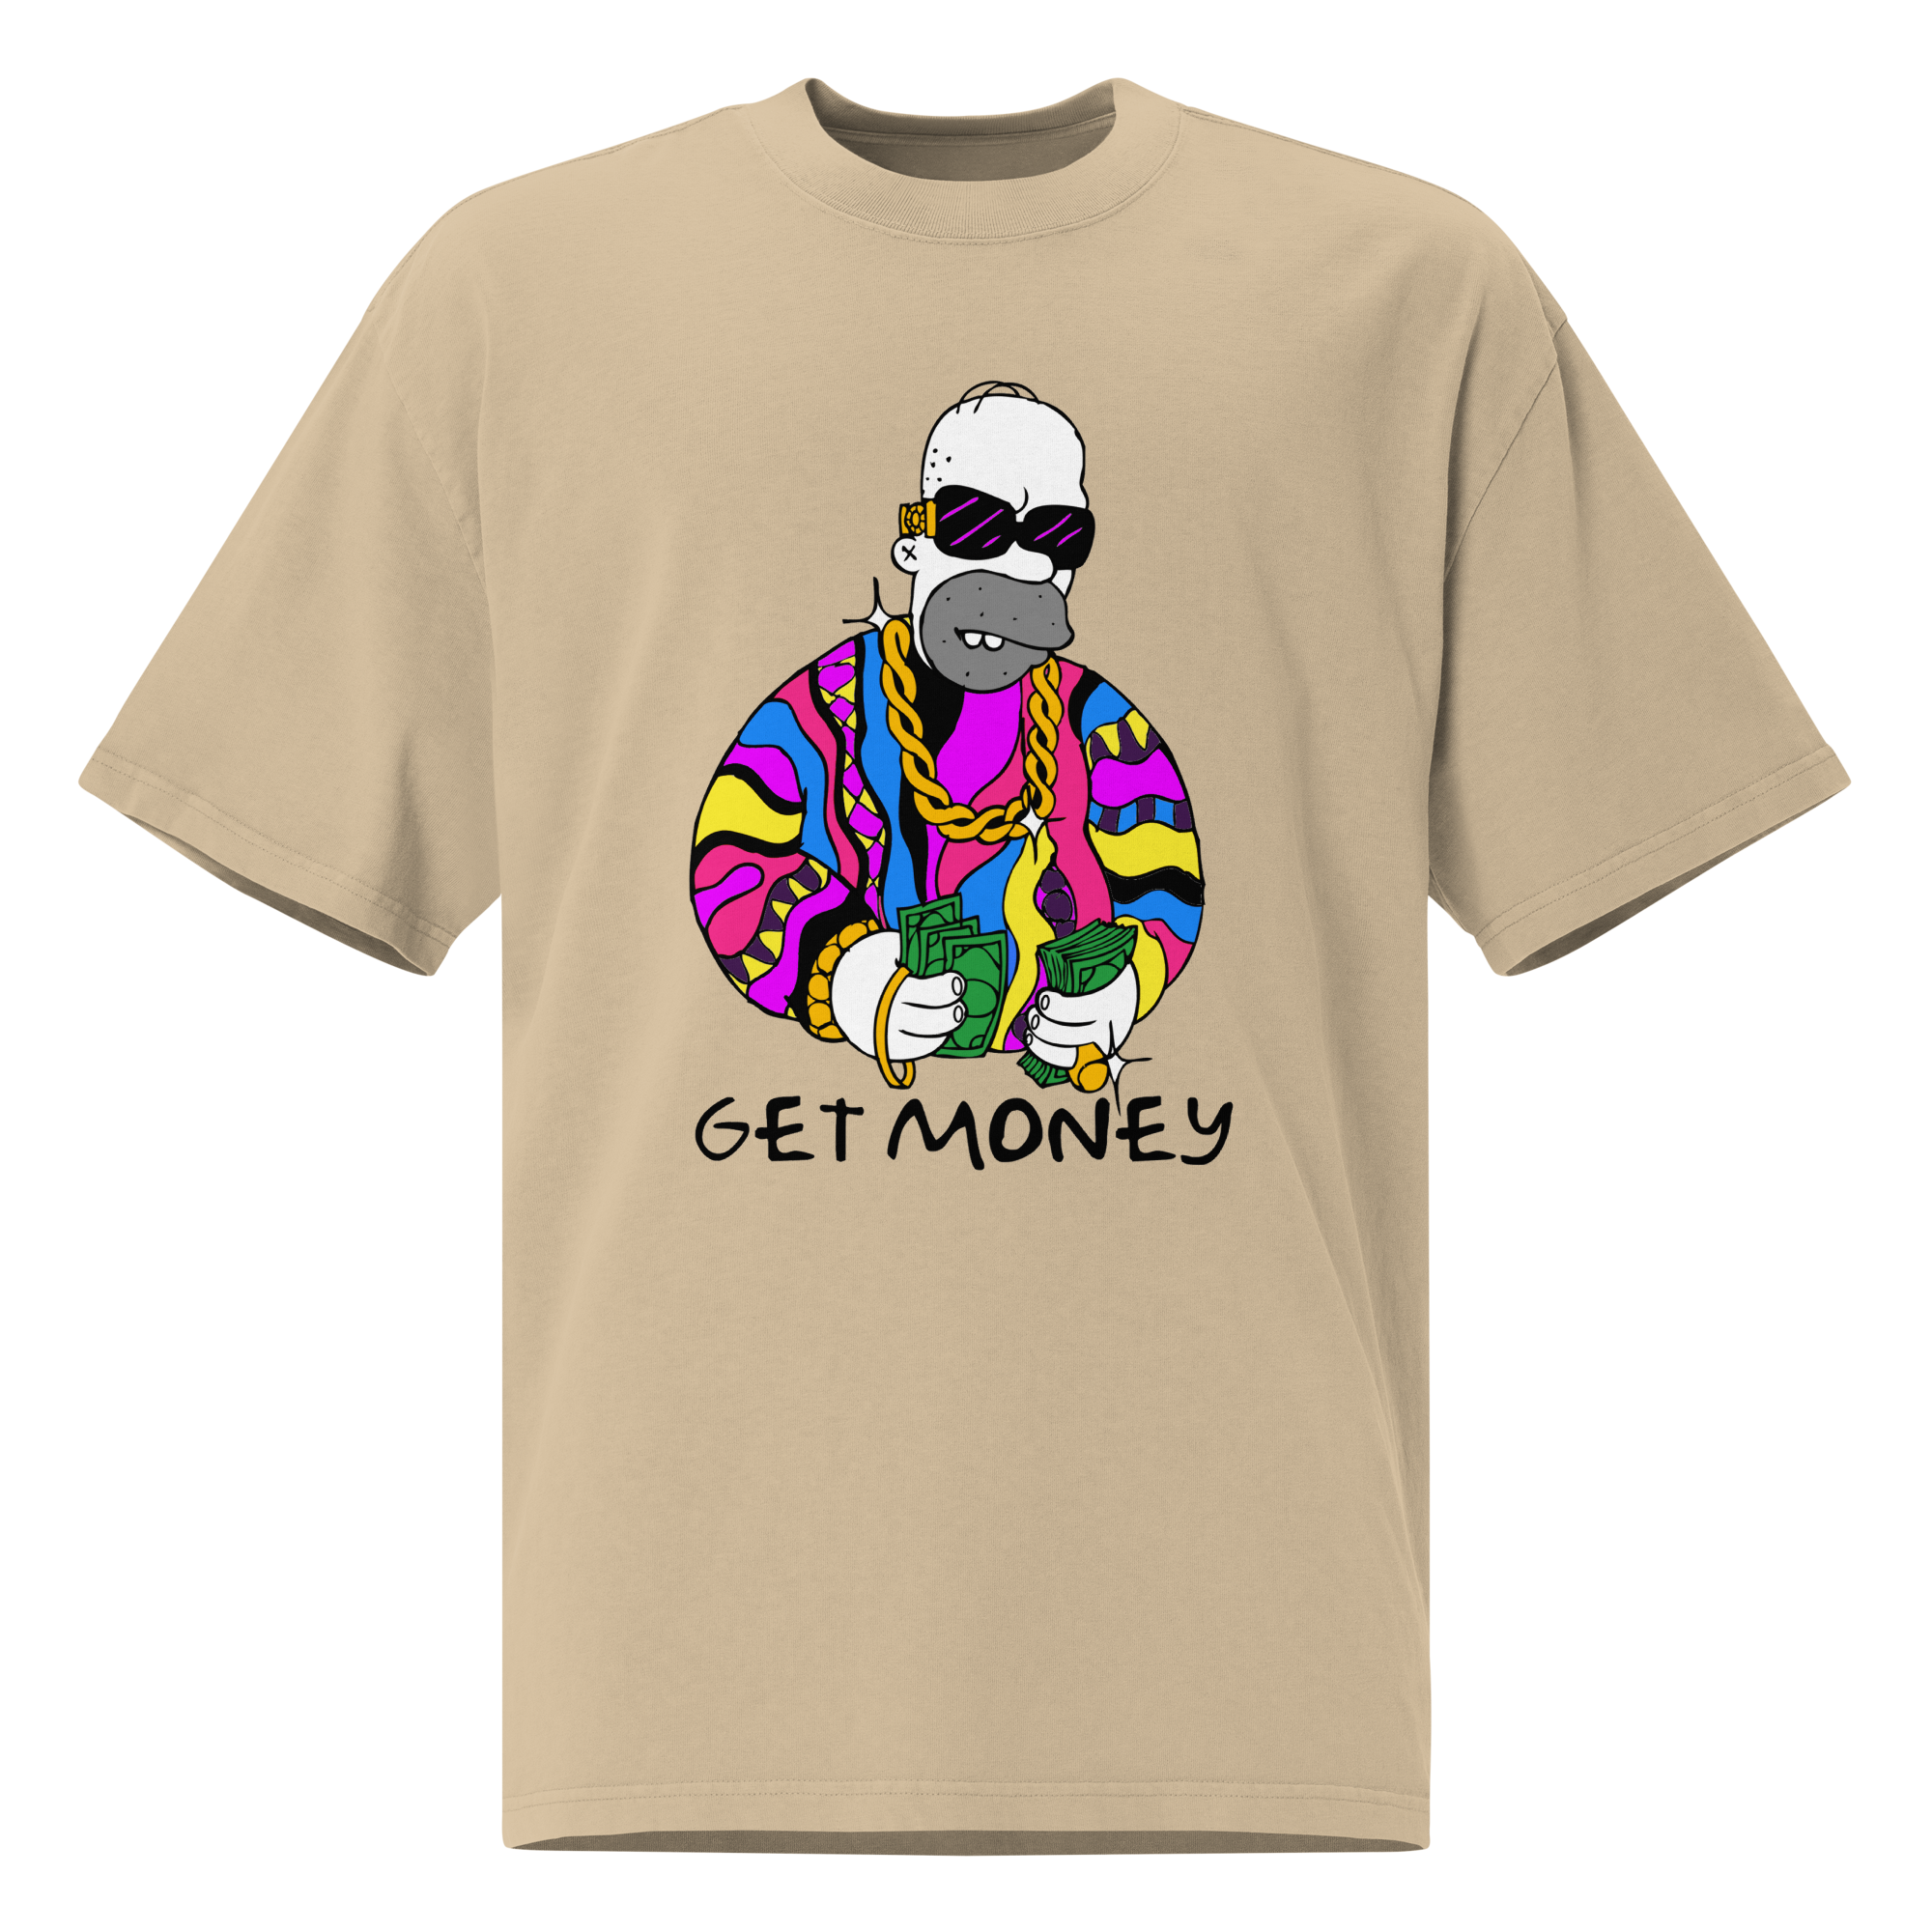 Rich Homer Quan x Get Money Oversized Unisex faded t-shirt